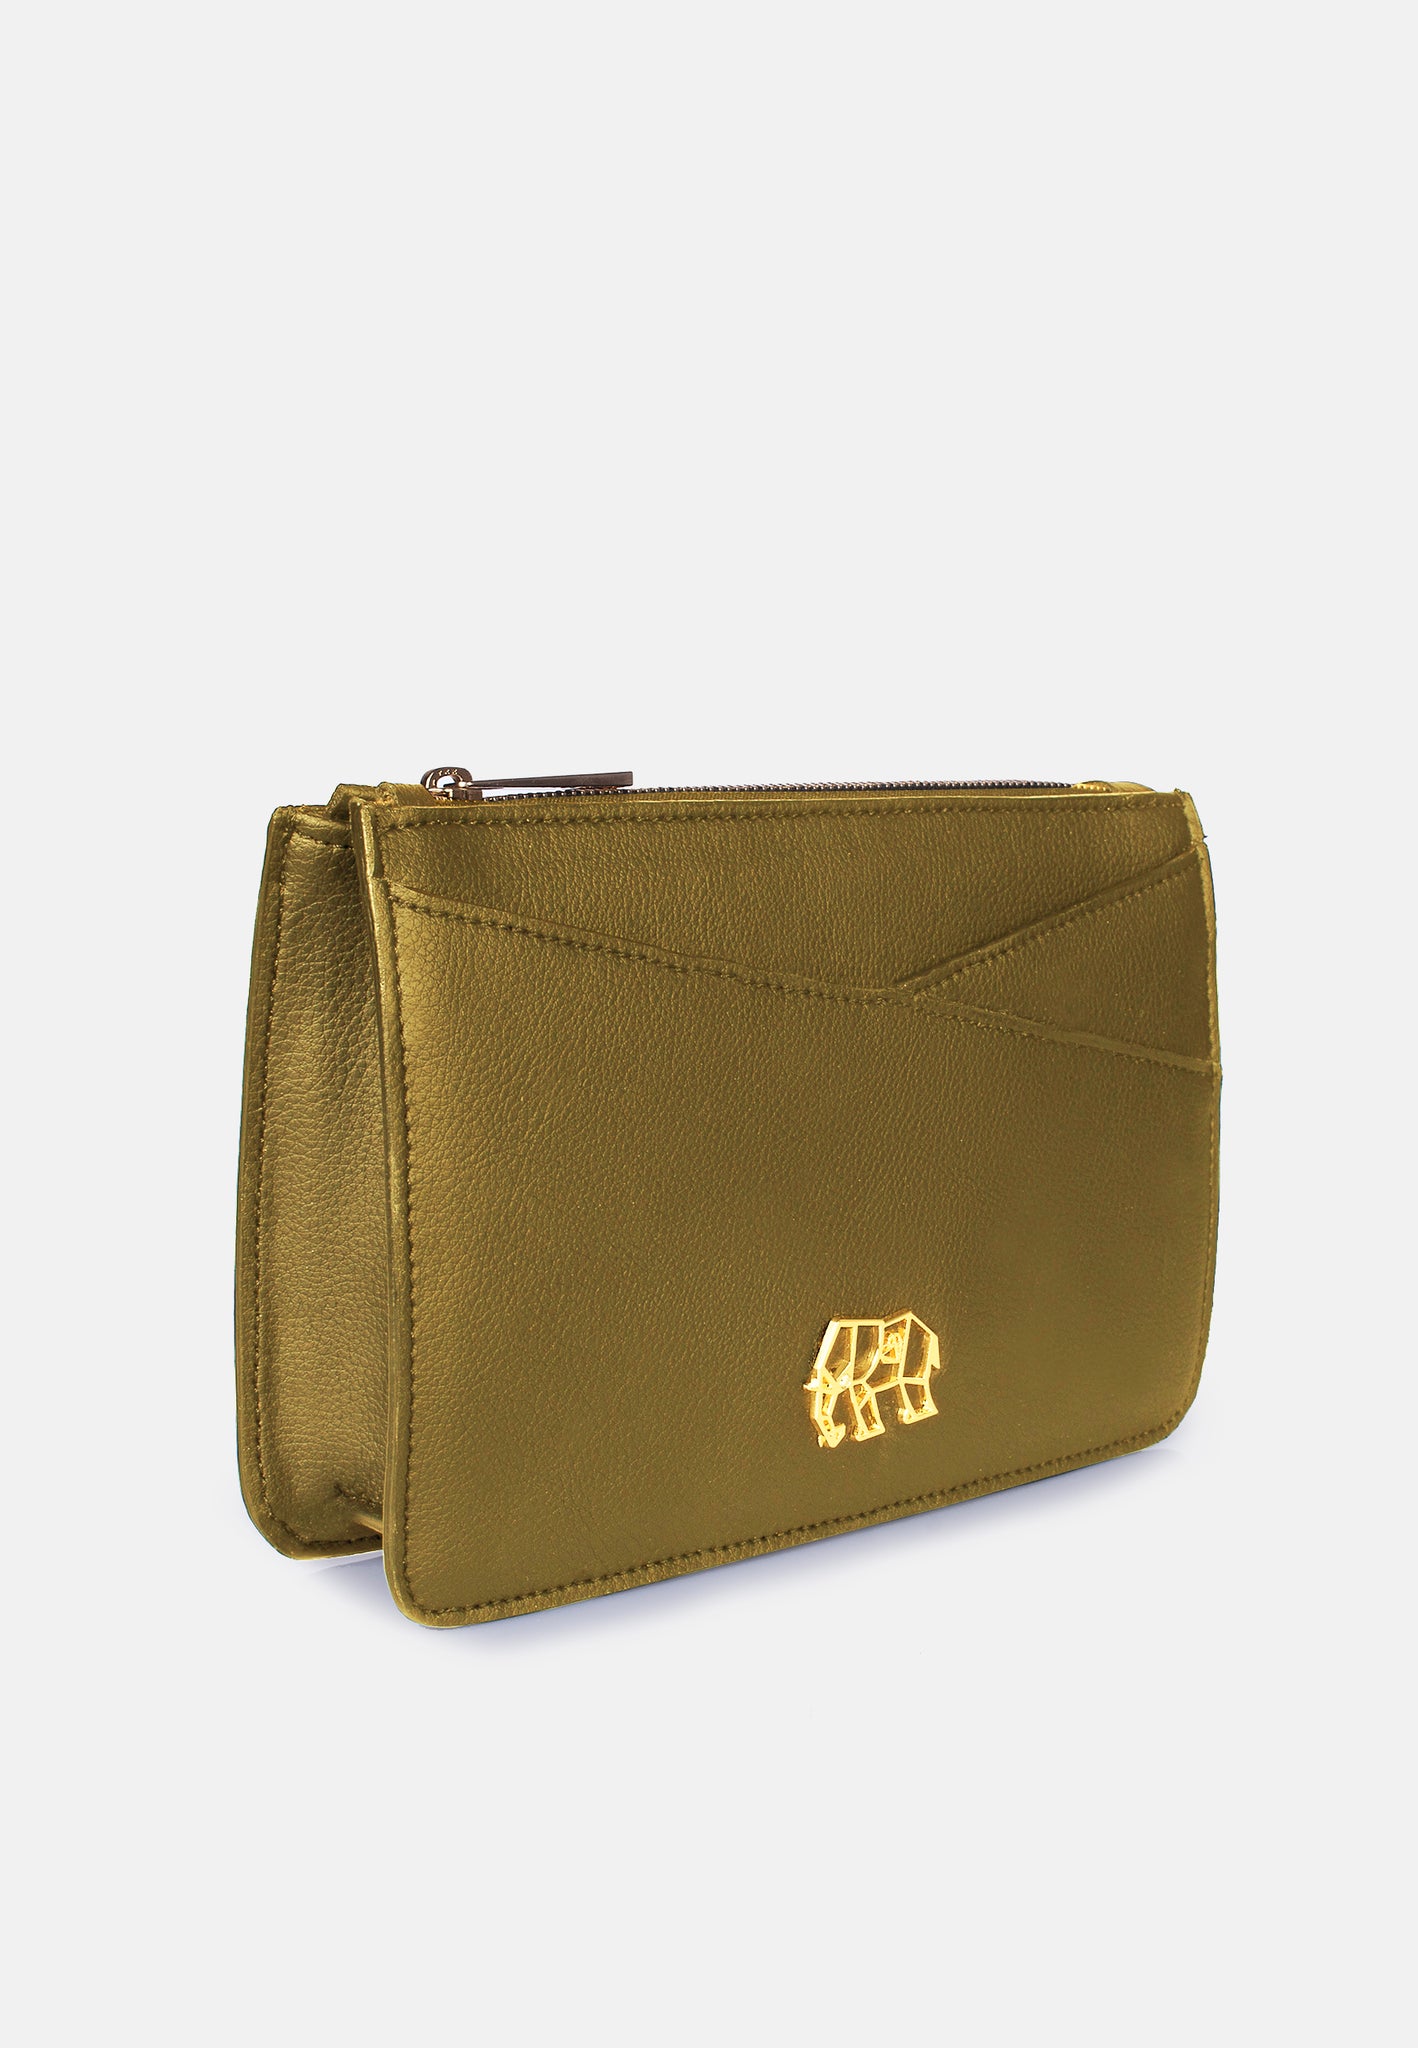 The Kaushal Bag Gold